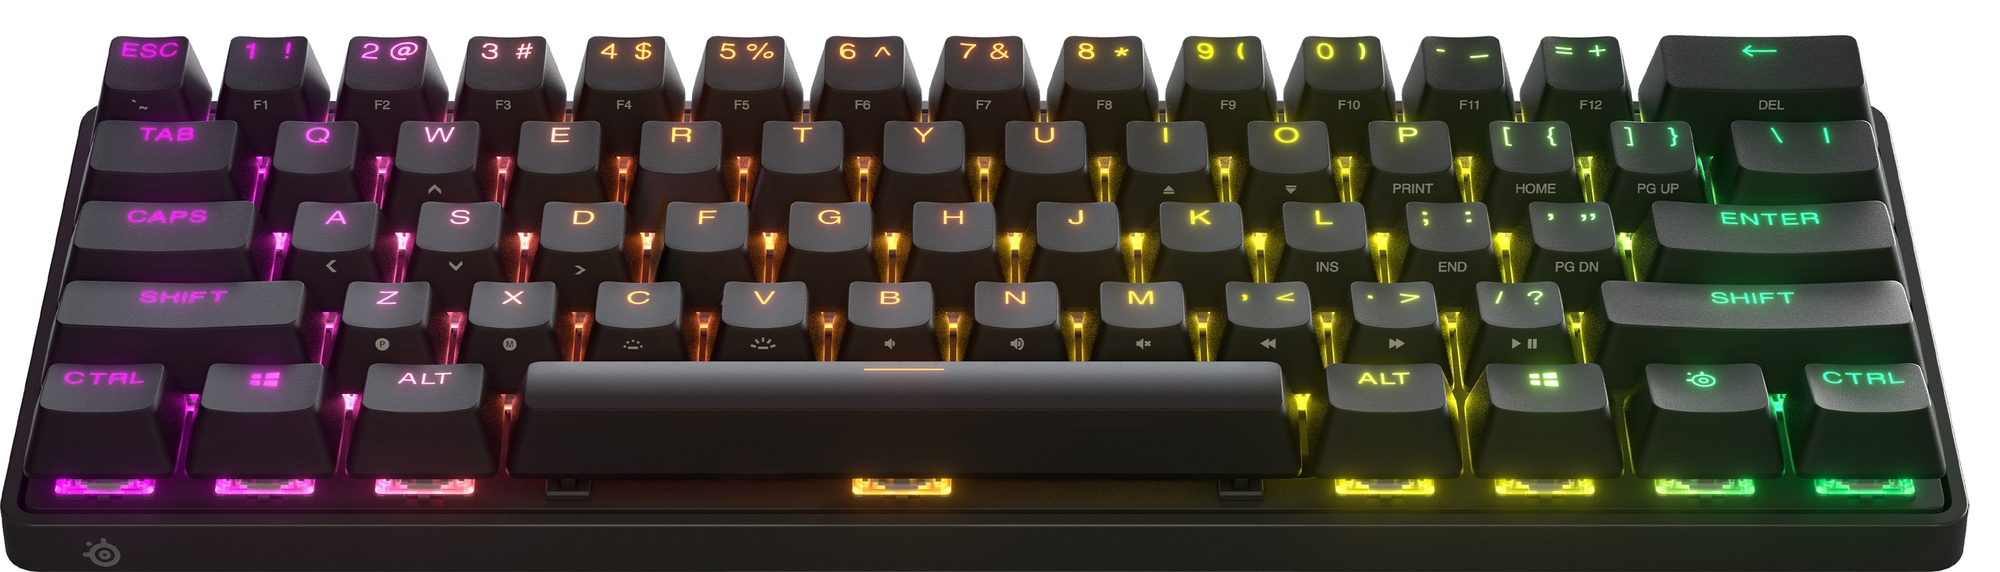 SteelSeries Apex Pro Mini trådlöst tangentbord för gaming - Elgiganten